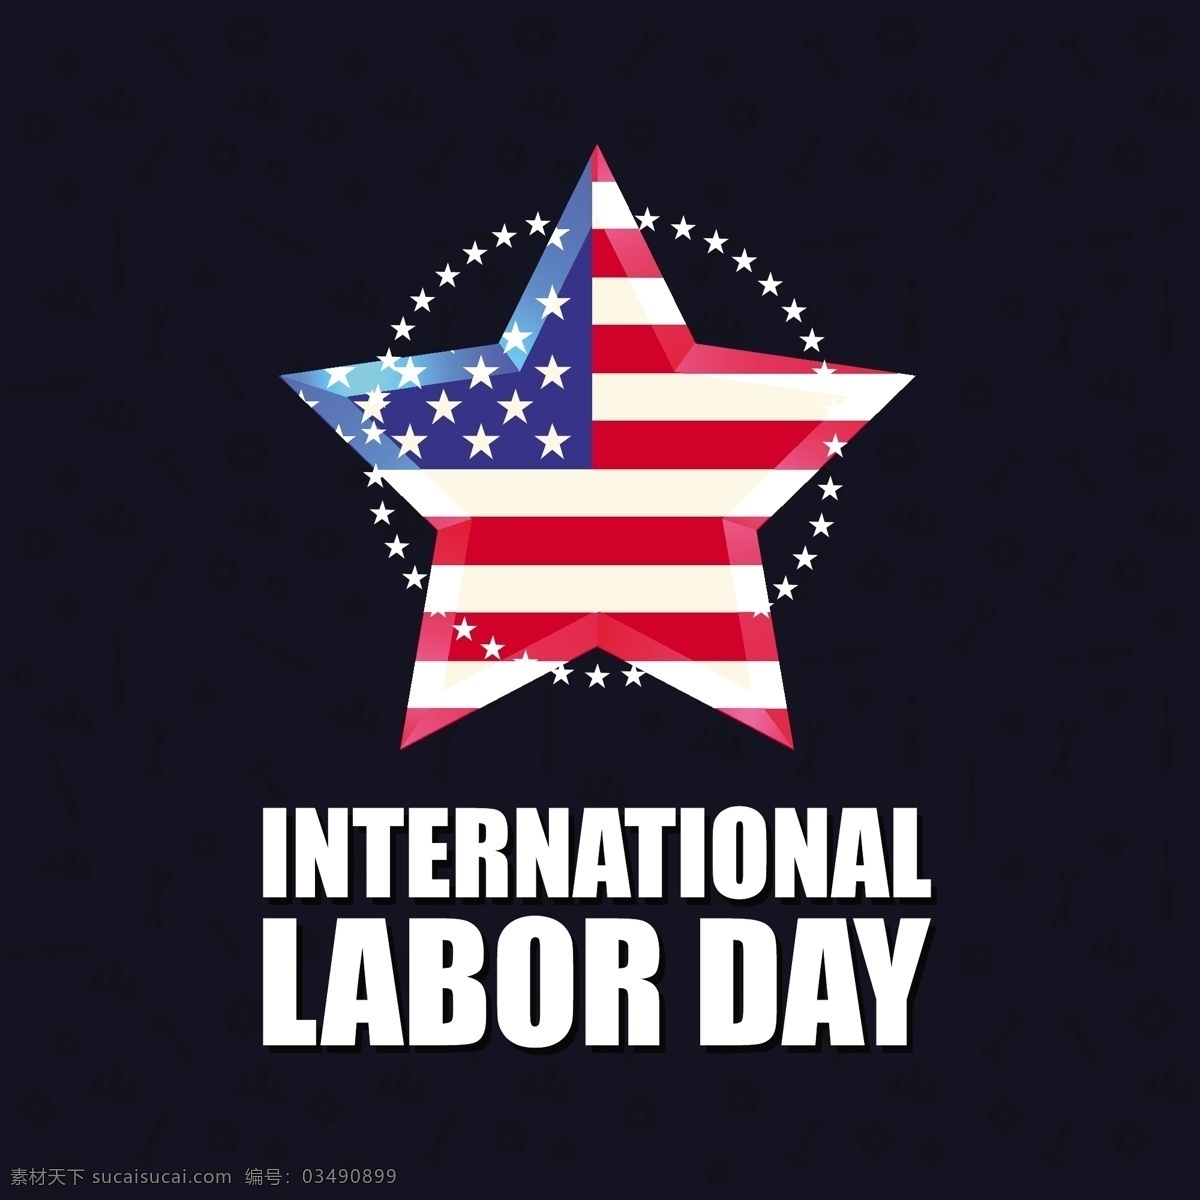 美国 国旗 纪念日 背景 老式 明星 卡片 复古 标志 社会 工作 庆祝 活动 假期 符号 日期 自由 工人 国际 黑色